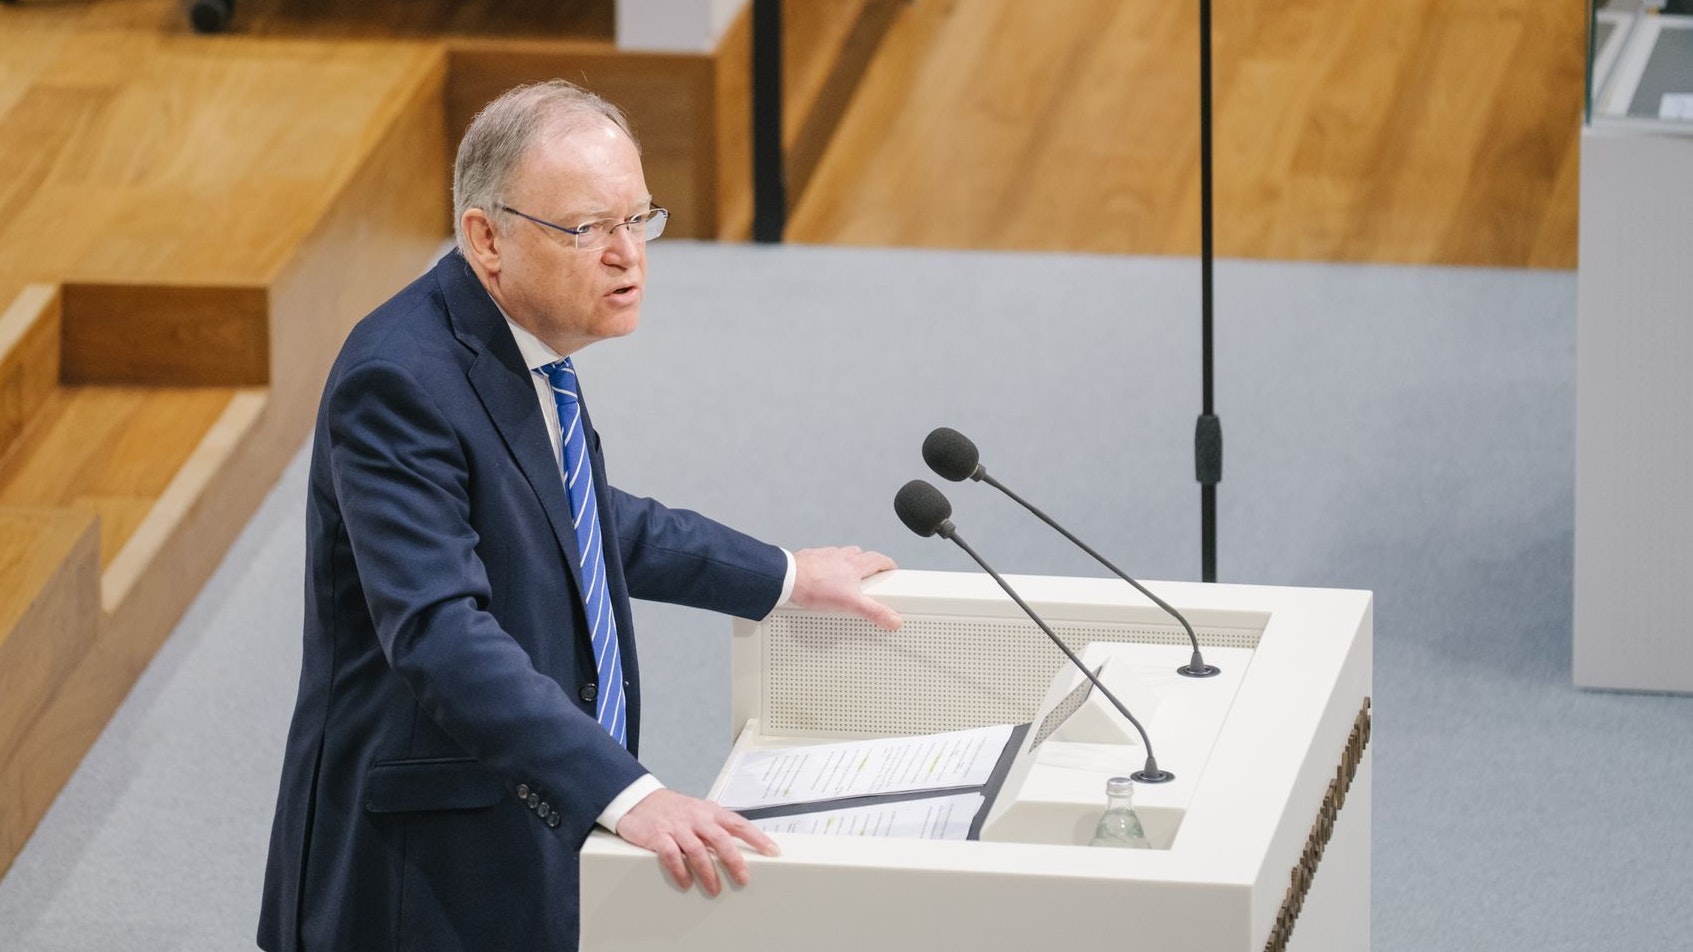 Optimistisch, aber vorsichtig: Niedersachsens Ministerpräsident Stephan Weil (SPD) im Landtag. Foto: dpa/Spata